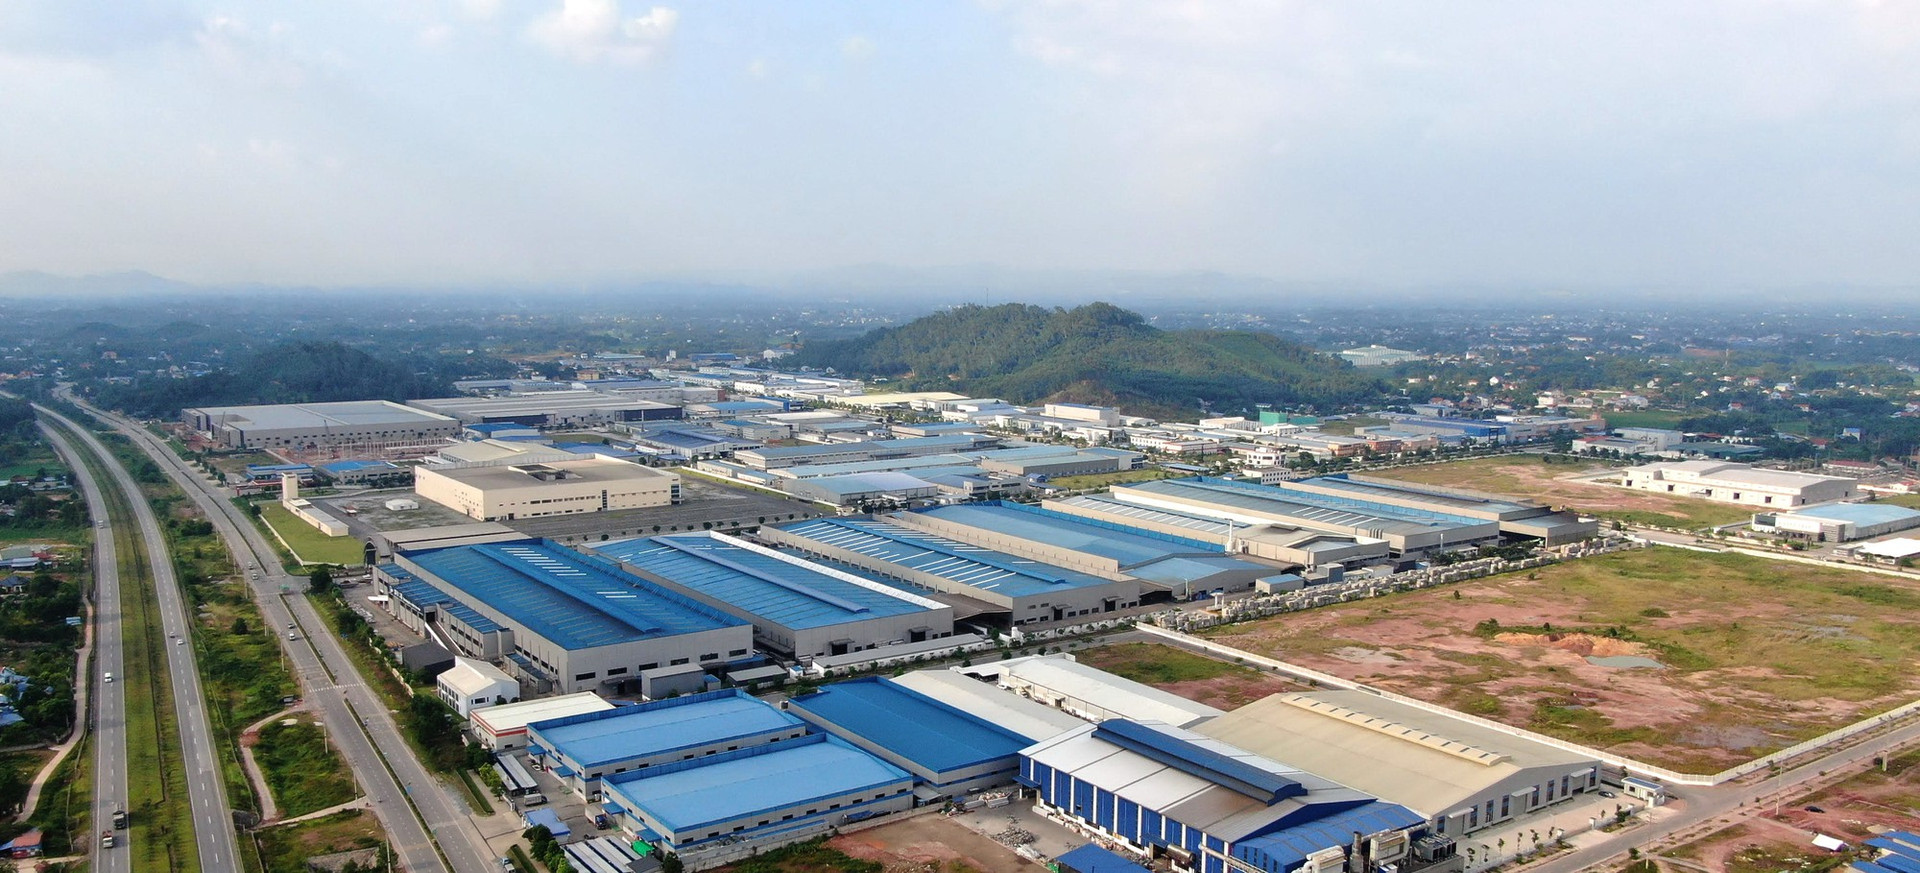 Thái Nguyên đầu tư thêm Cụm công nghiệp trên 500 tỷ đồng - Ảnh 1.